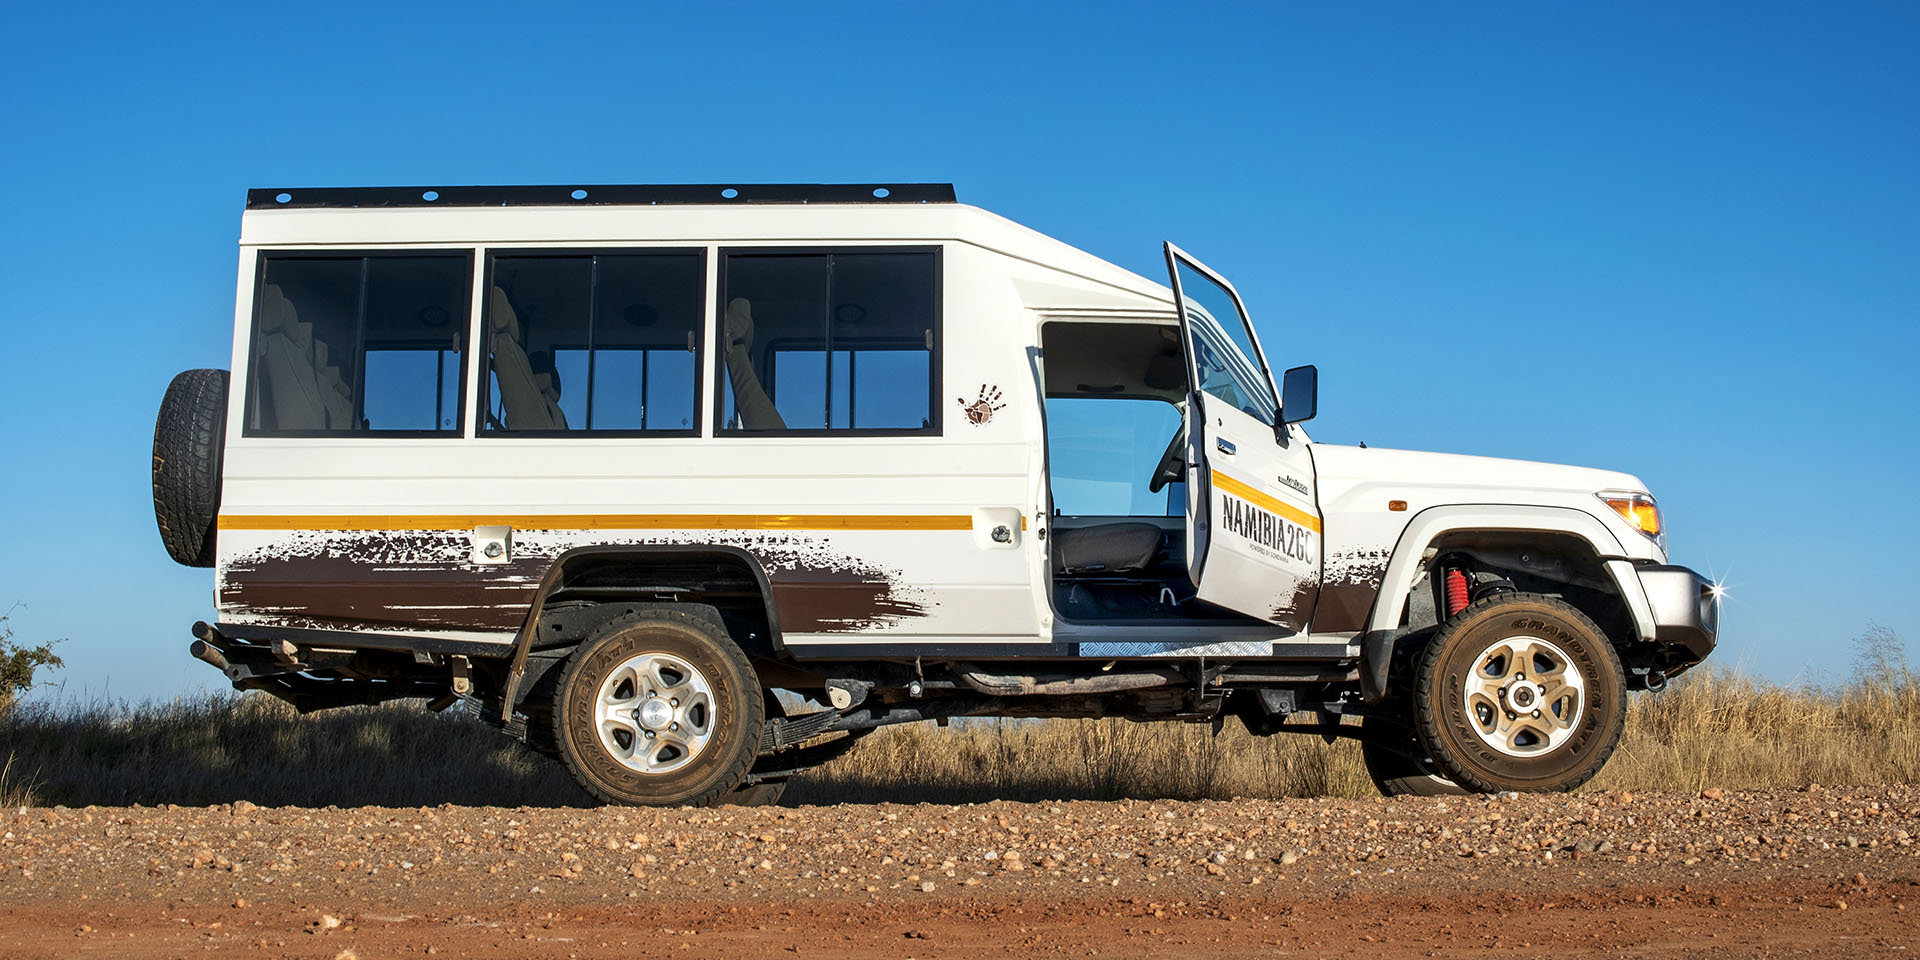 Stretched Land Cruiser, rental car, Namibia